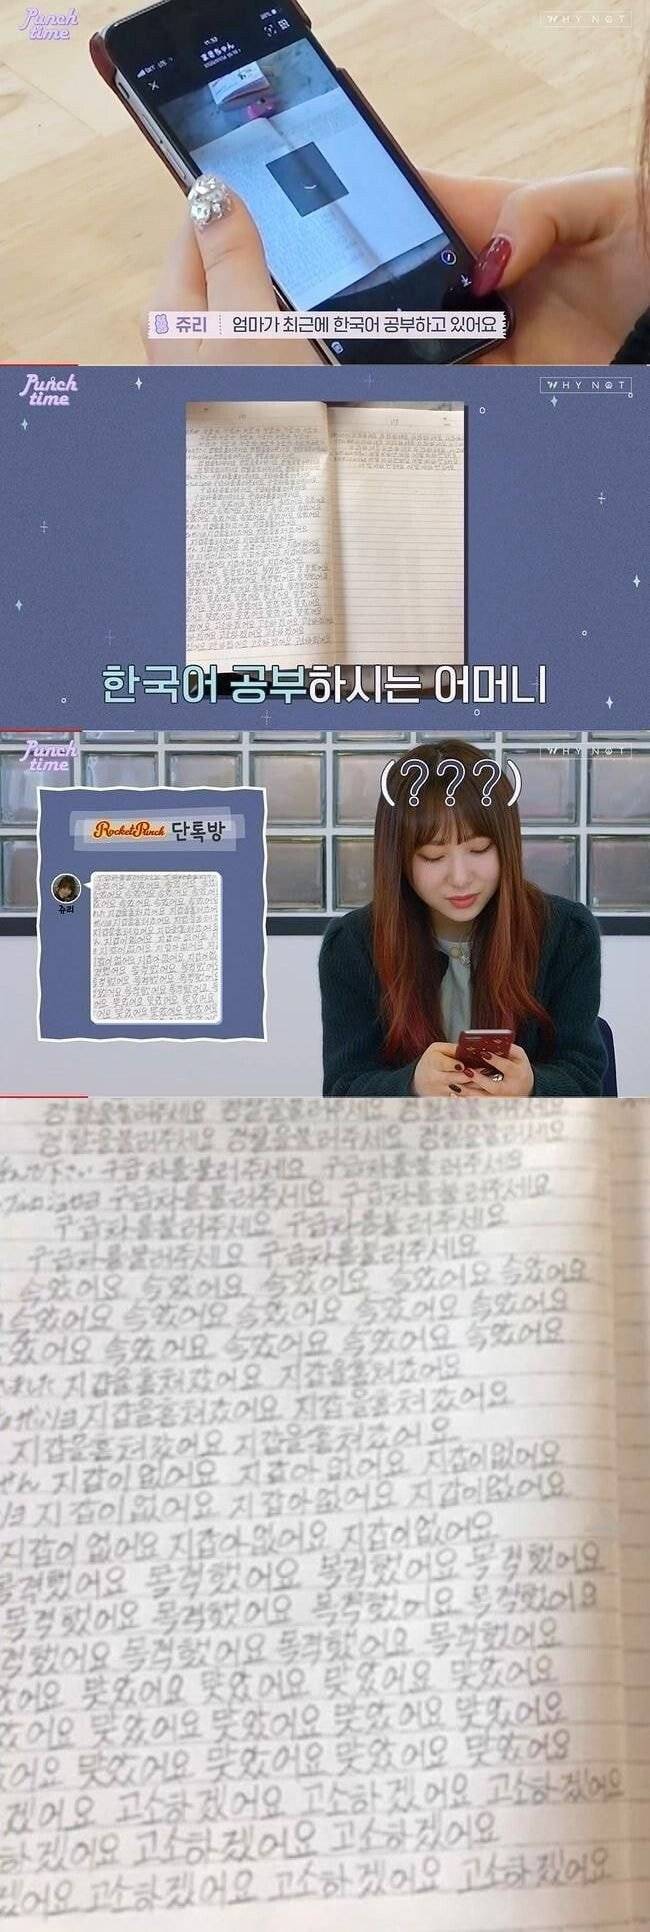 한국에서 데뷔한 일본 아이돌(쥬리) 엄마의 한국어 공부